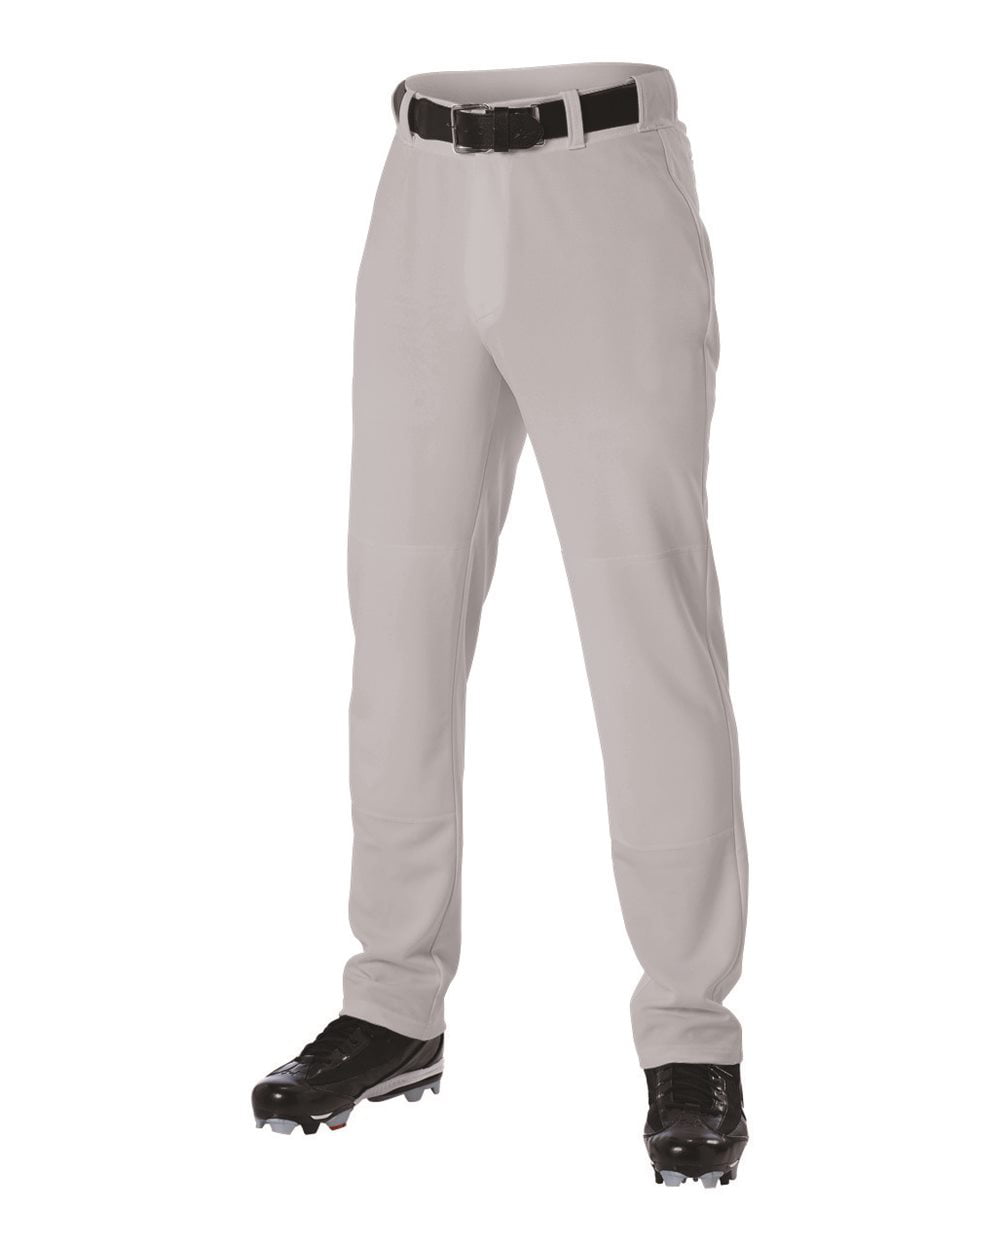 Russell Adult Men's Gray or White w/pipe Baseball Pants S233L2BK  *REG $30.00* 